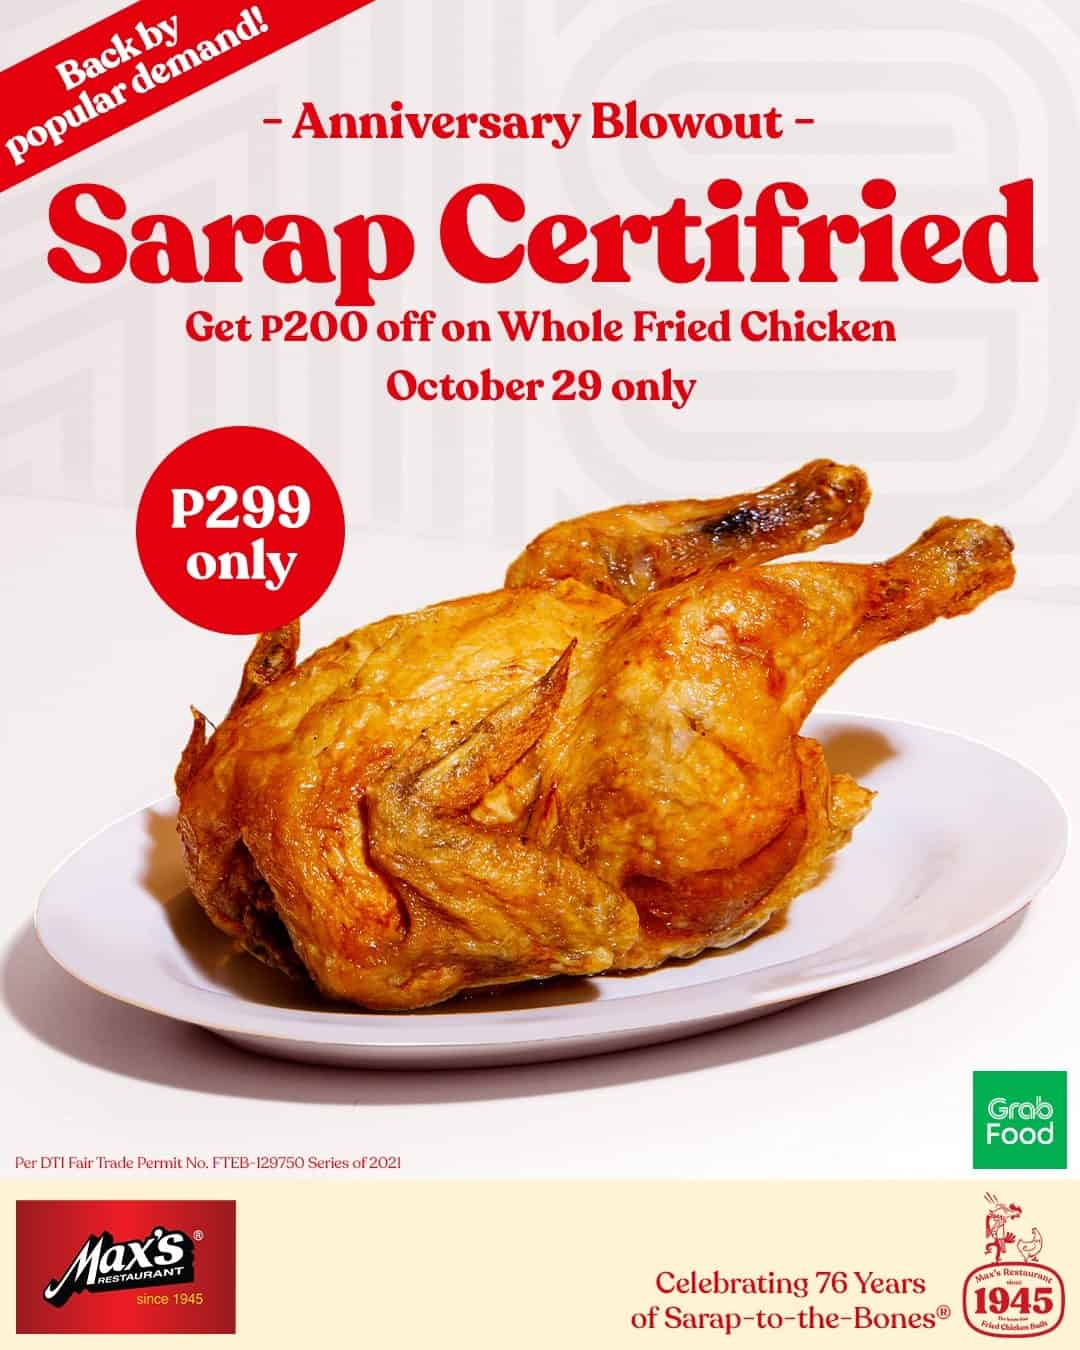 Certified Tasty Fried Chicken on Maxs Restaurant Menu Philippines